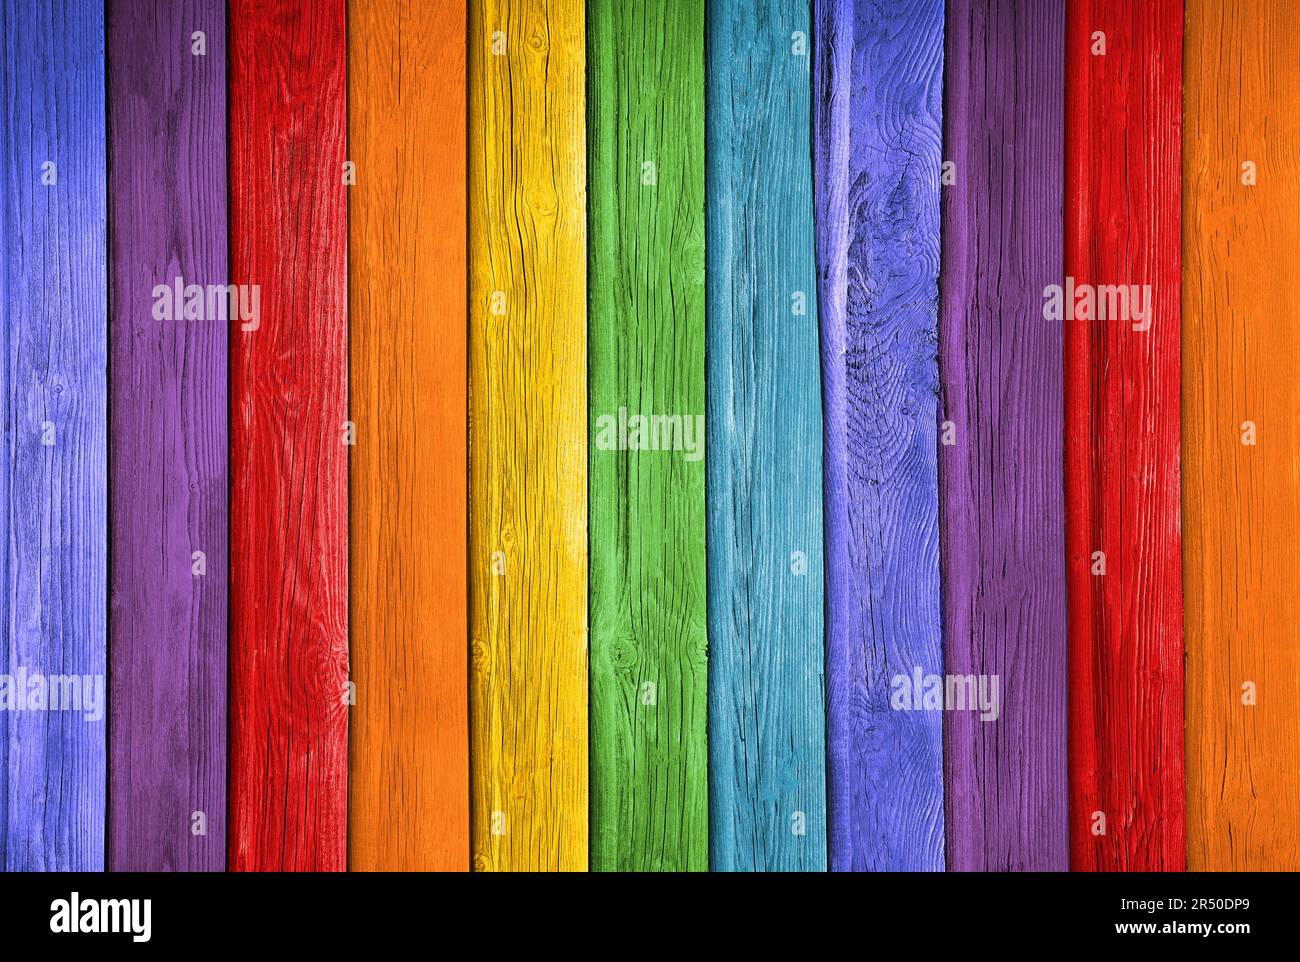 Viejos tablones en los colores del arco iris fondo de madera colorido